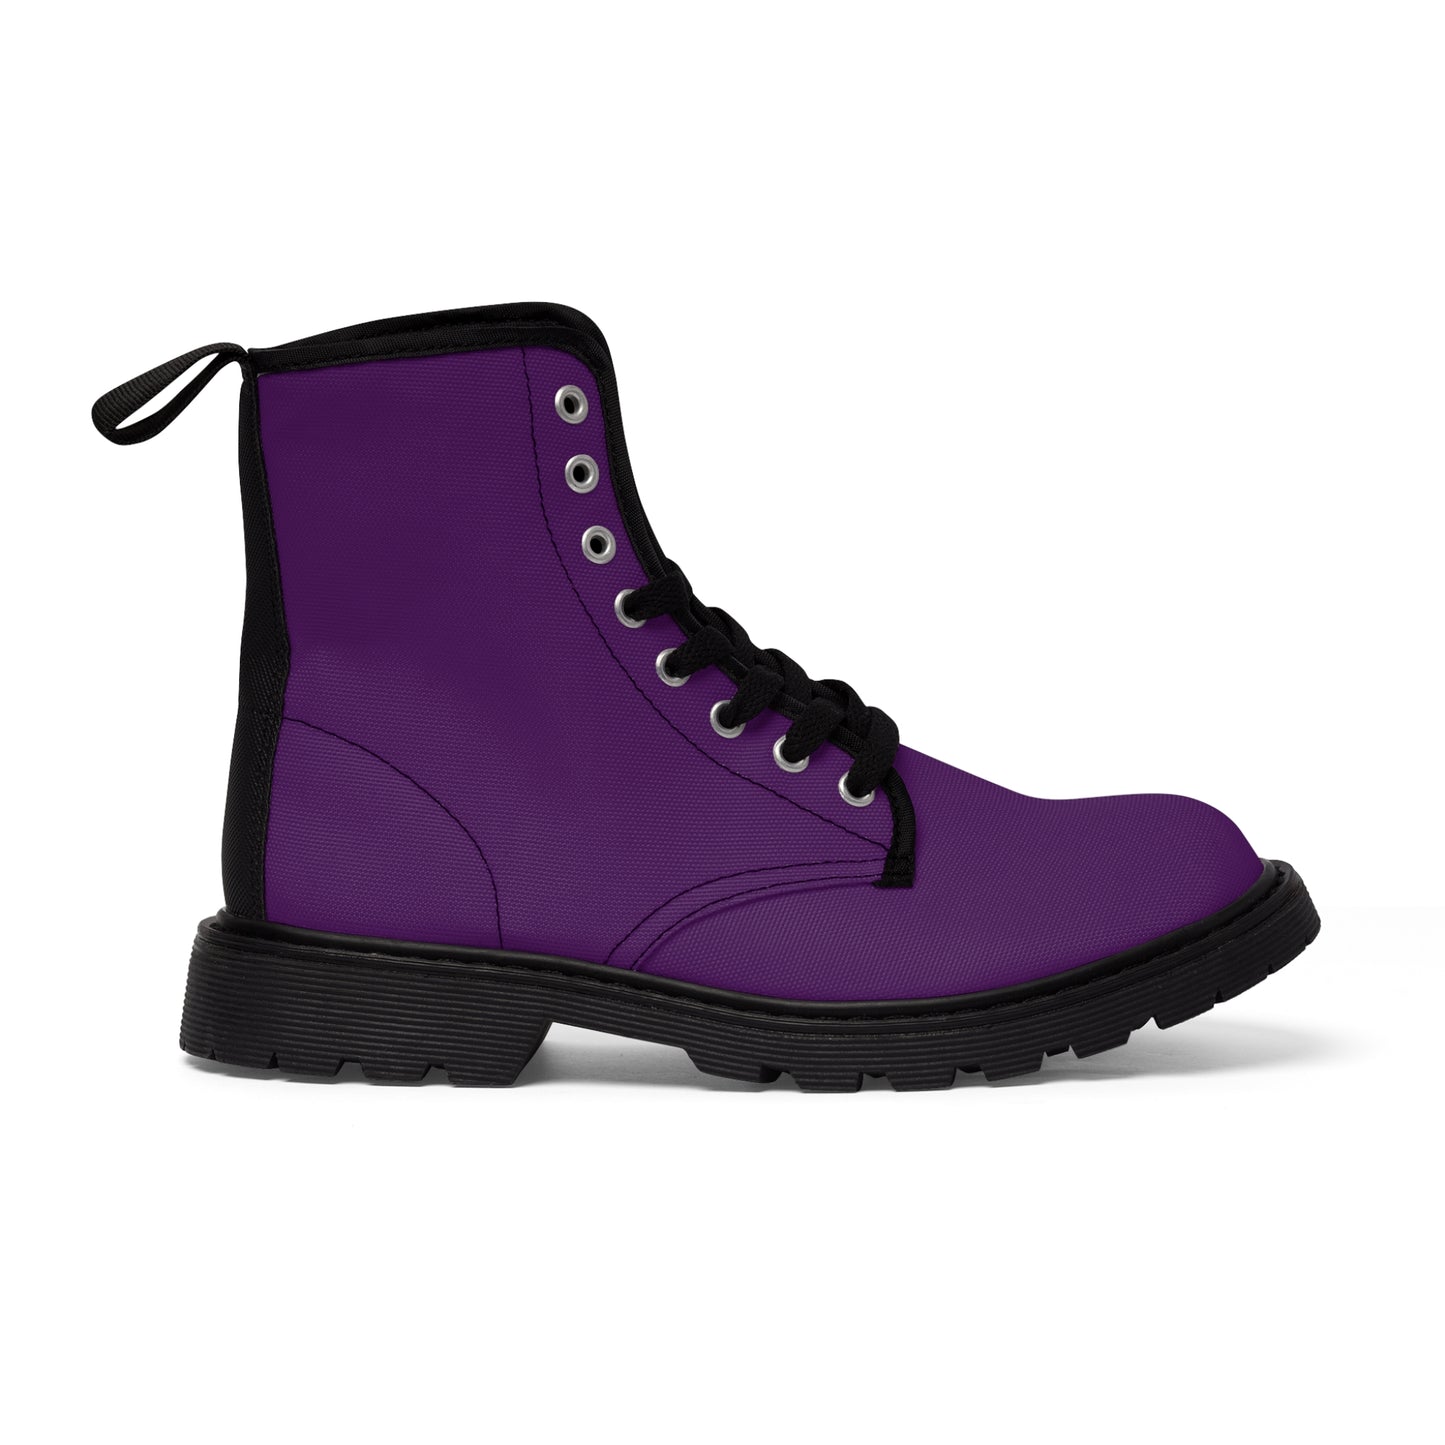 Men's Canvas Boots - Royal Purple US 10.5 Black sole